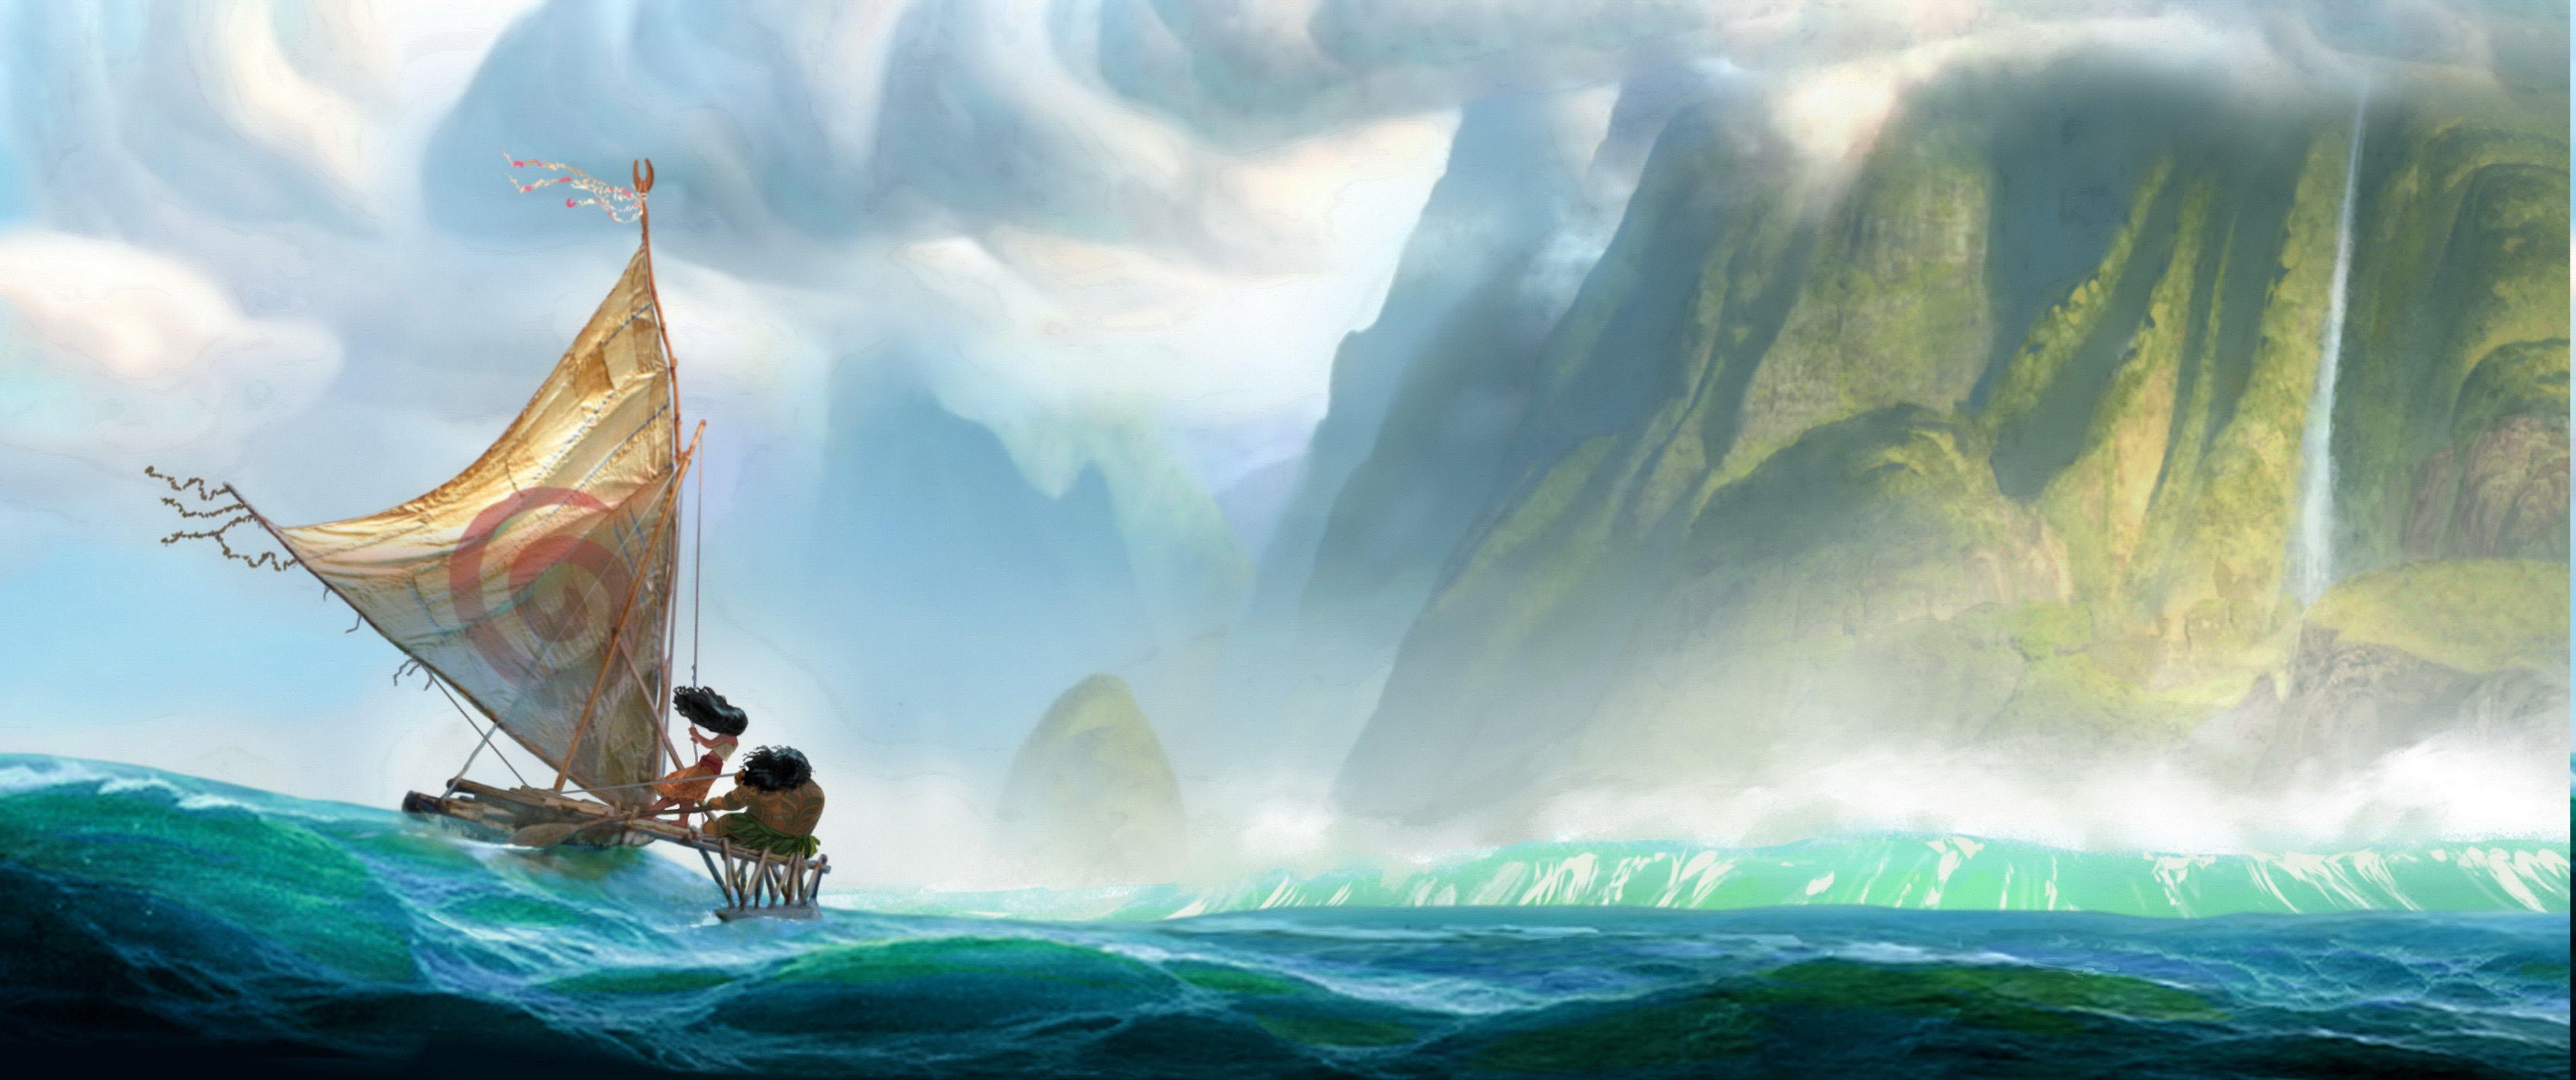 Moana, Landscape, Sea, Boat, Fantasy Art Wallpaper HD / Desktop